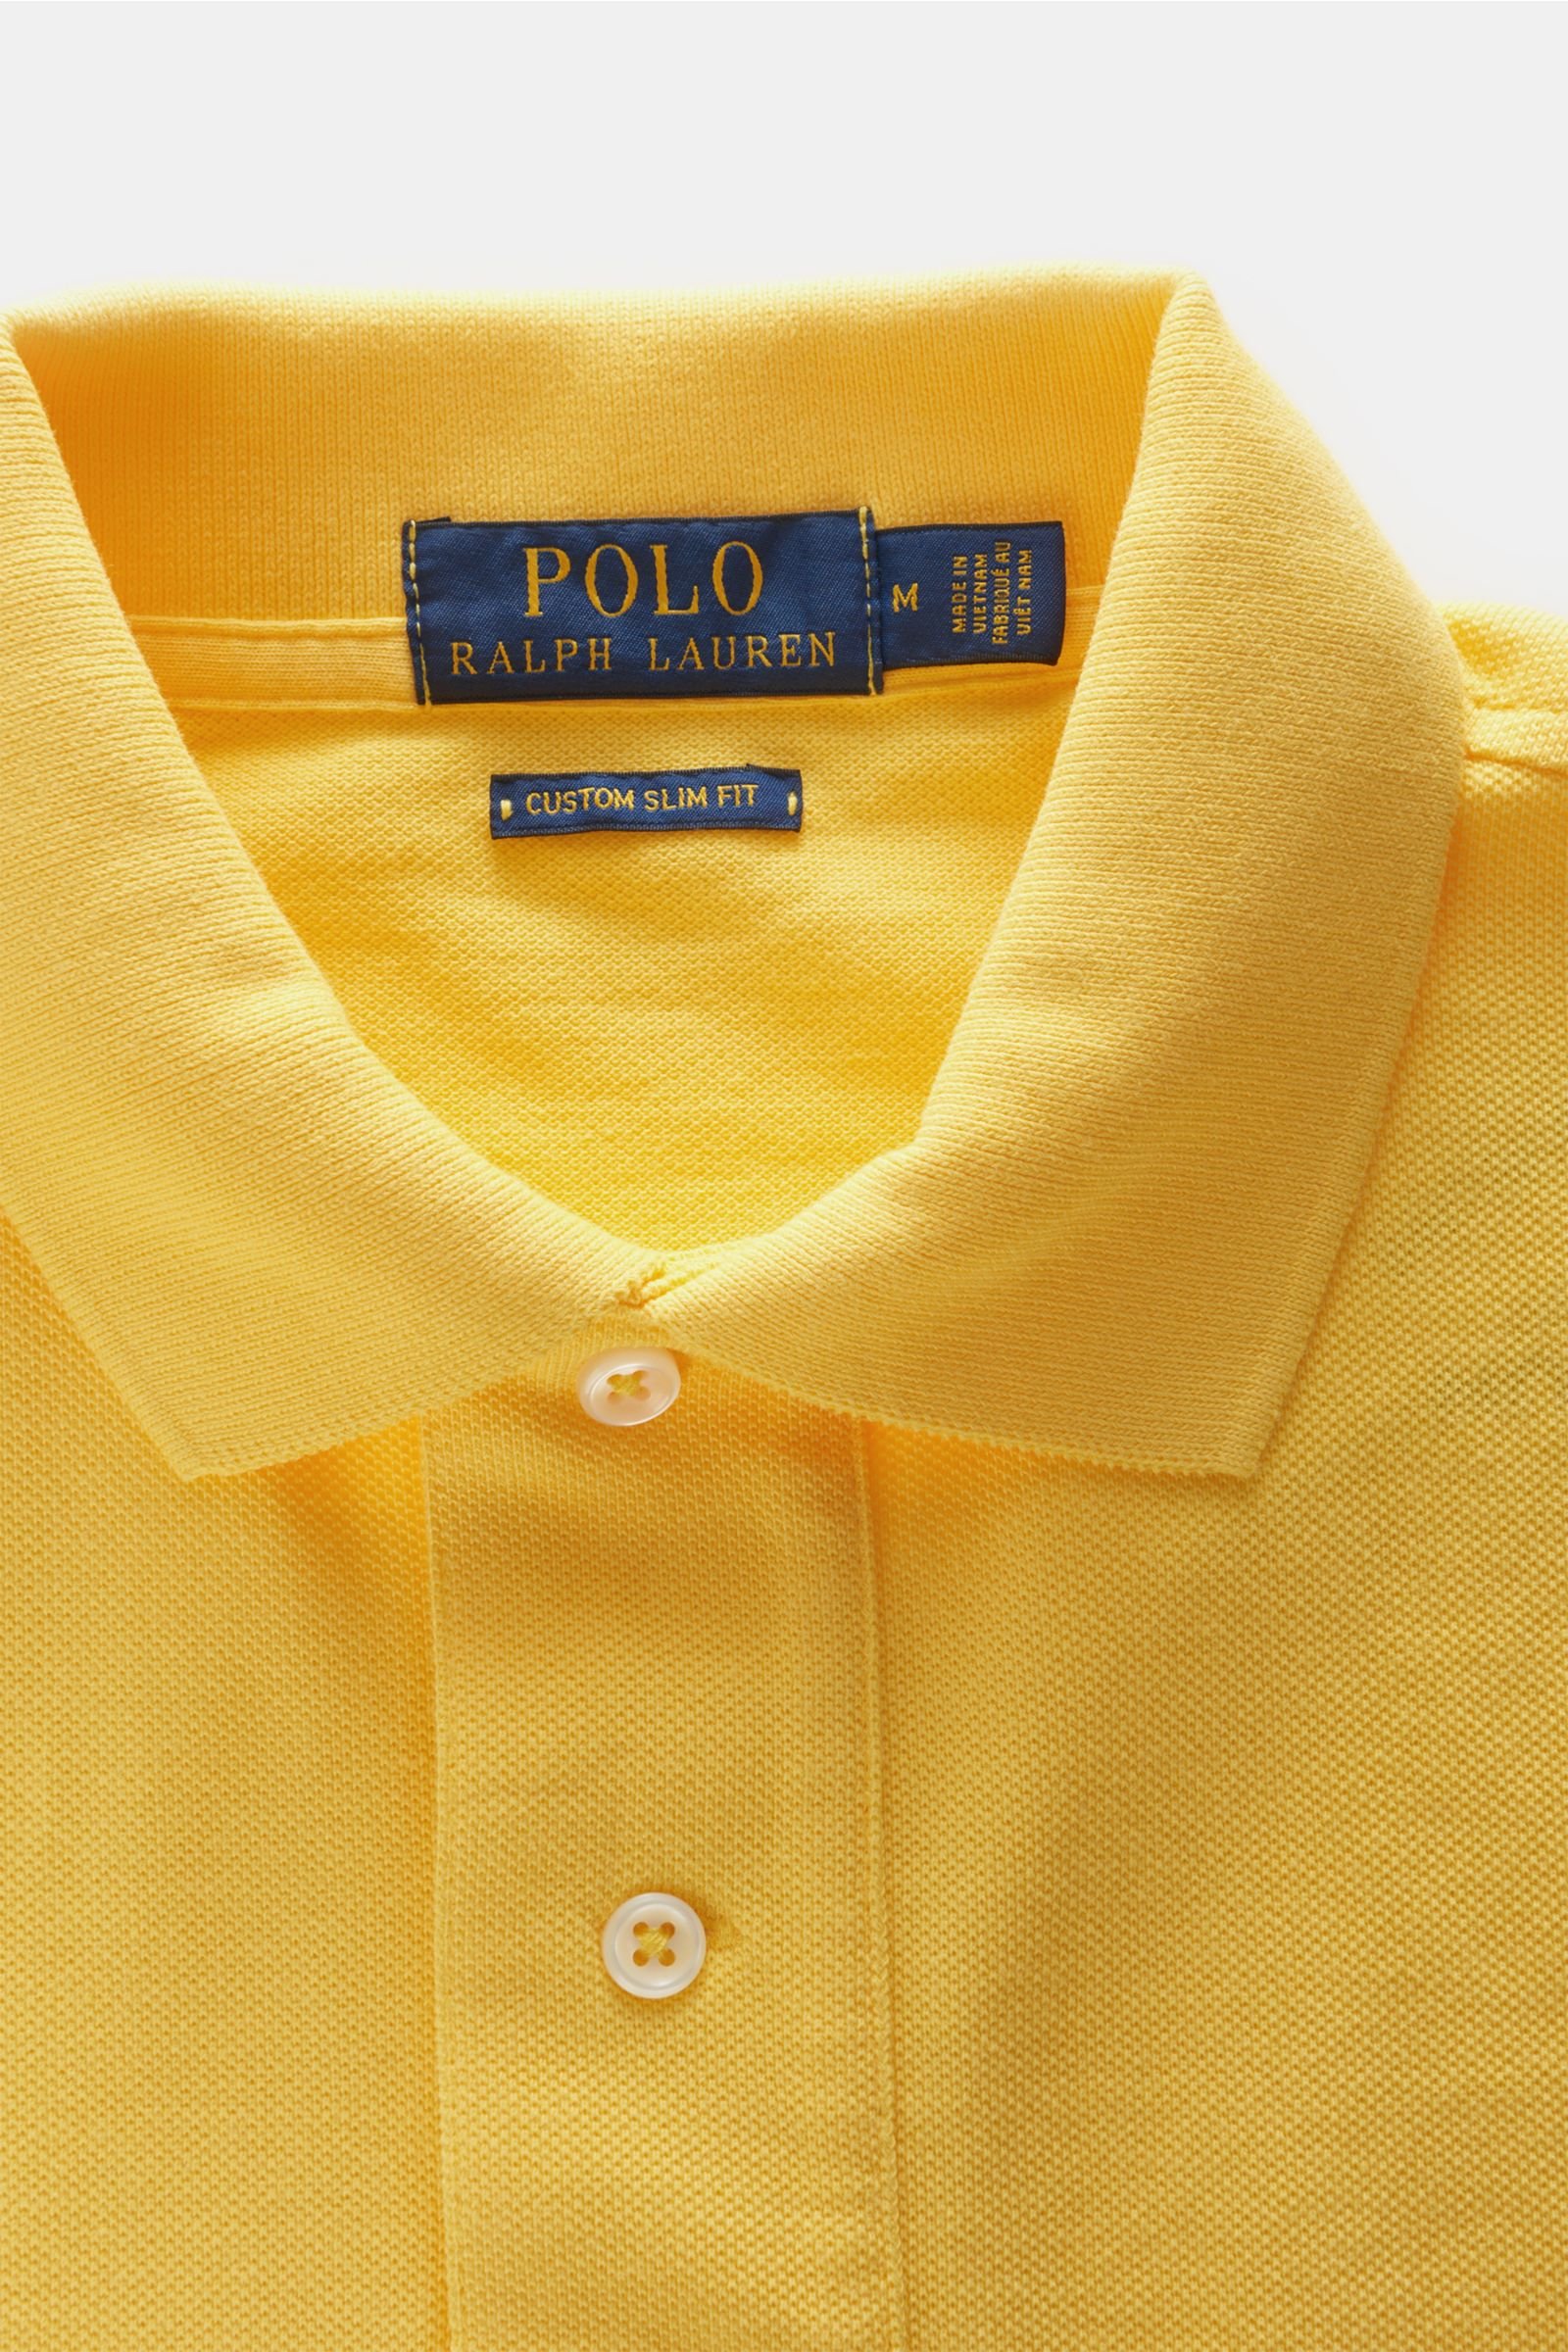 polo ralph lauren yellow polo